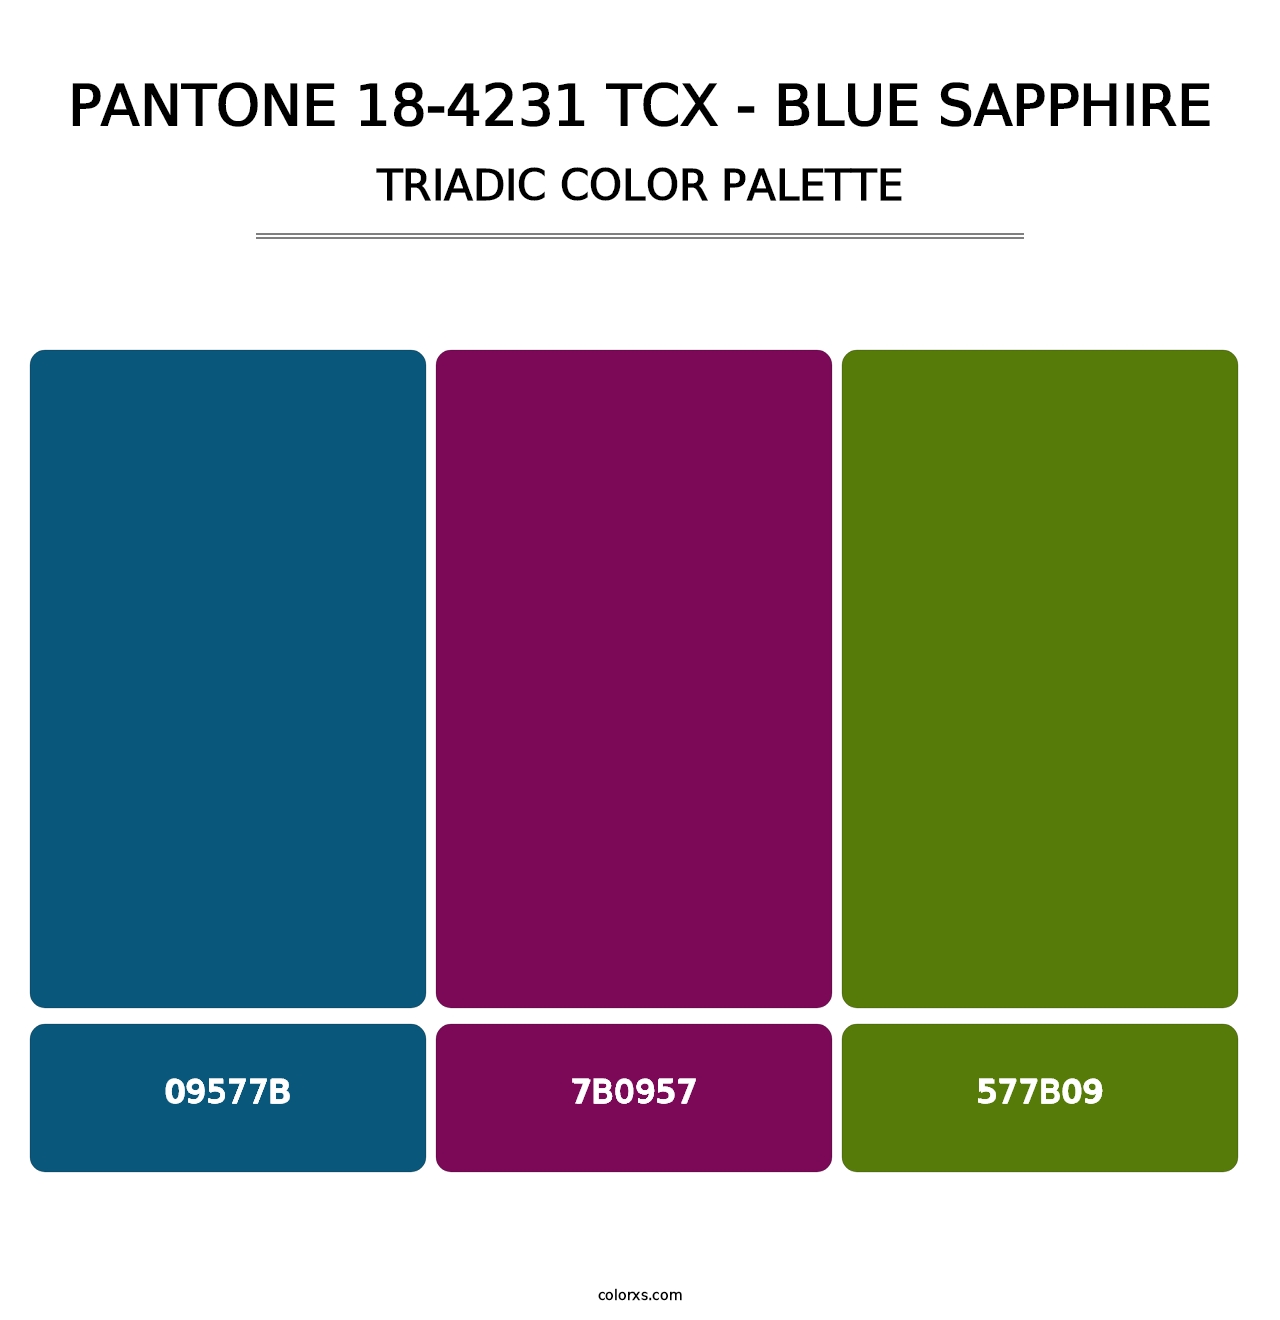 PANTONE 18-4231 TCX - Blue Sapphire - Triadic Color Palette